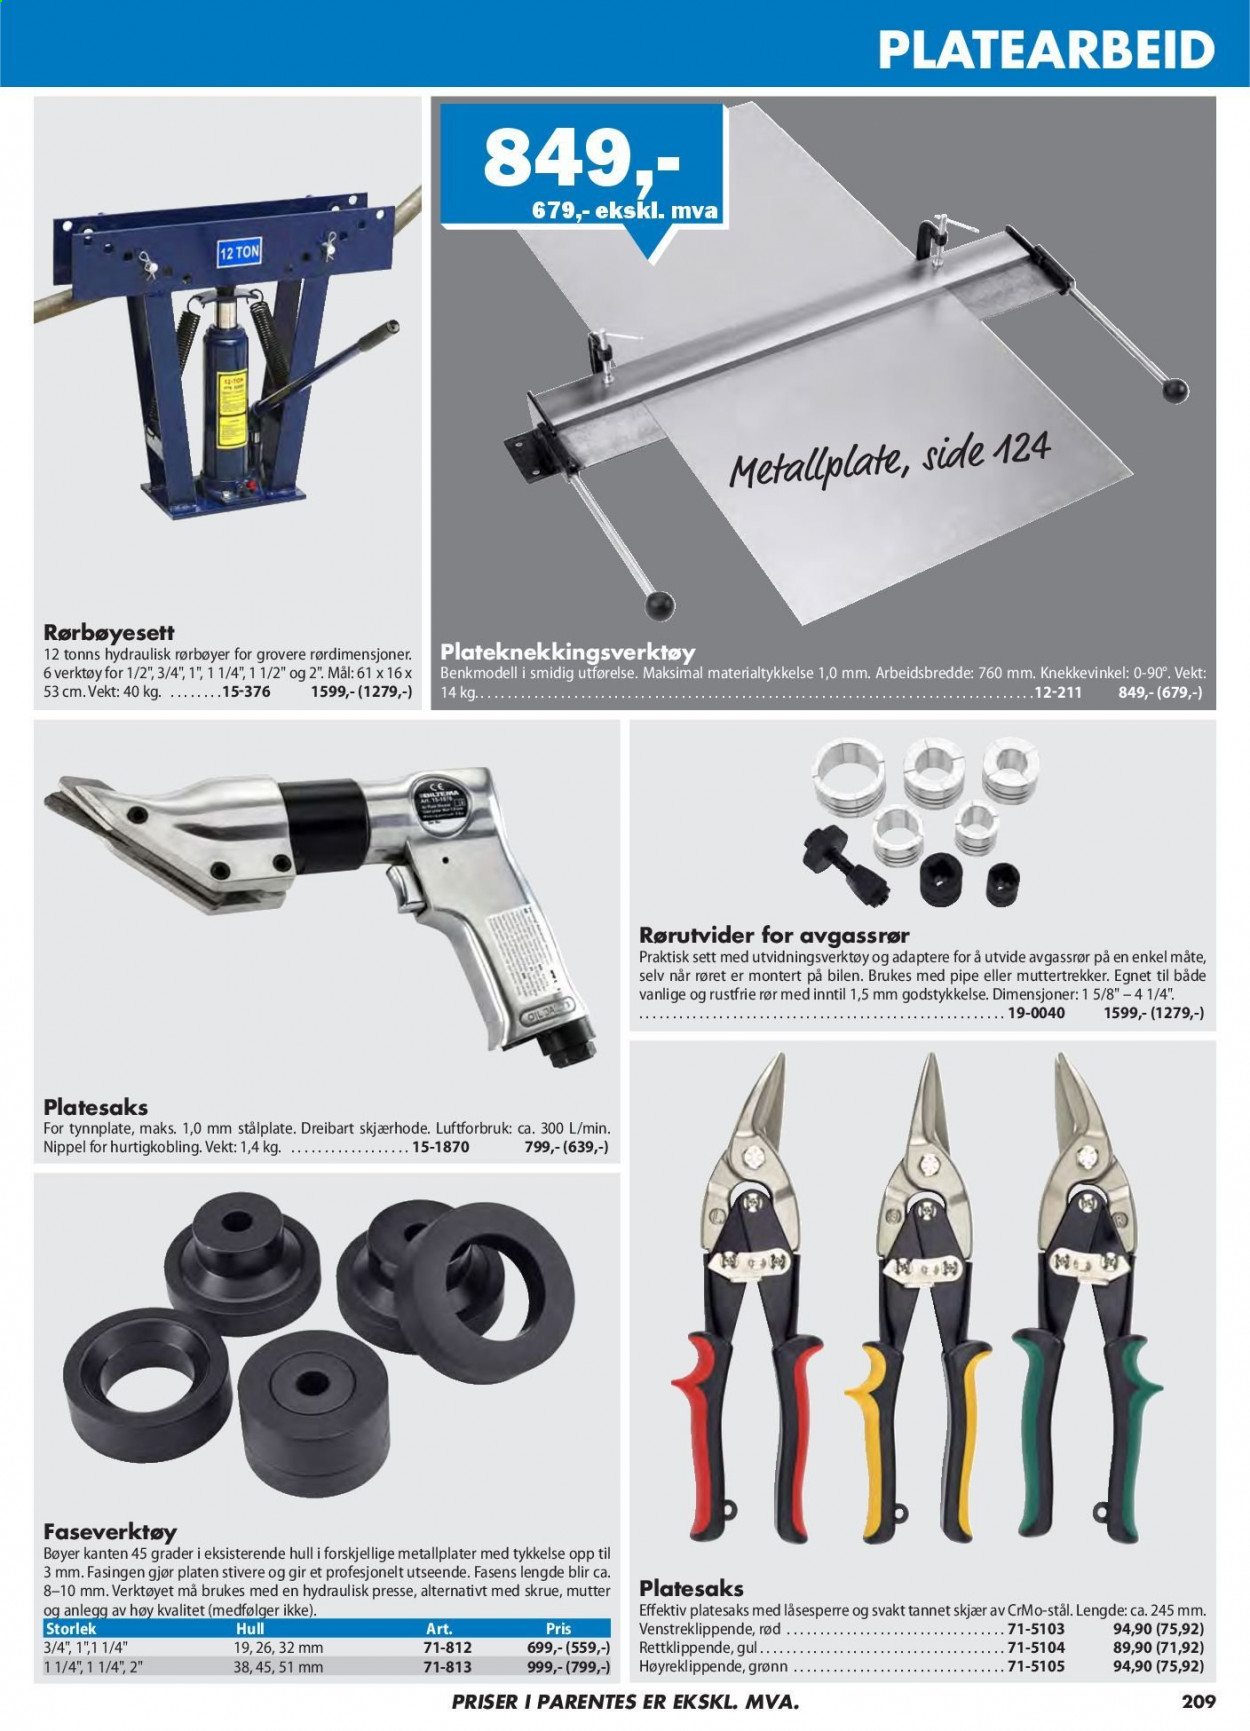 thumbnail - Kundeavis Biltema - Produkter fra tilbudsaviser - verktøy. Side 209.